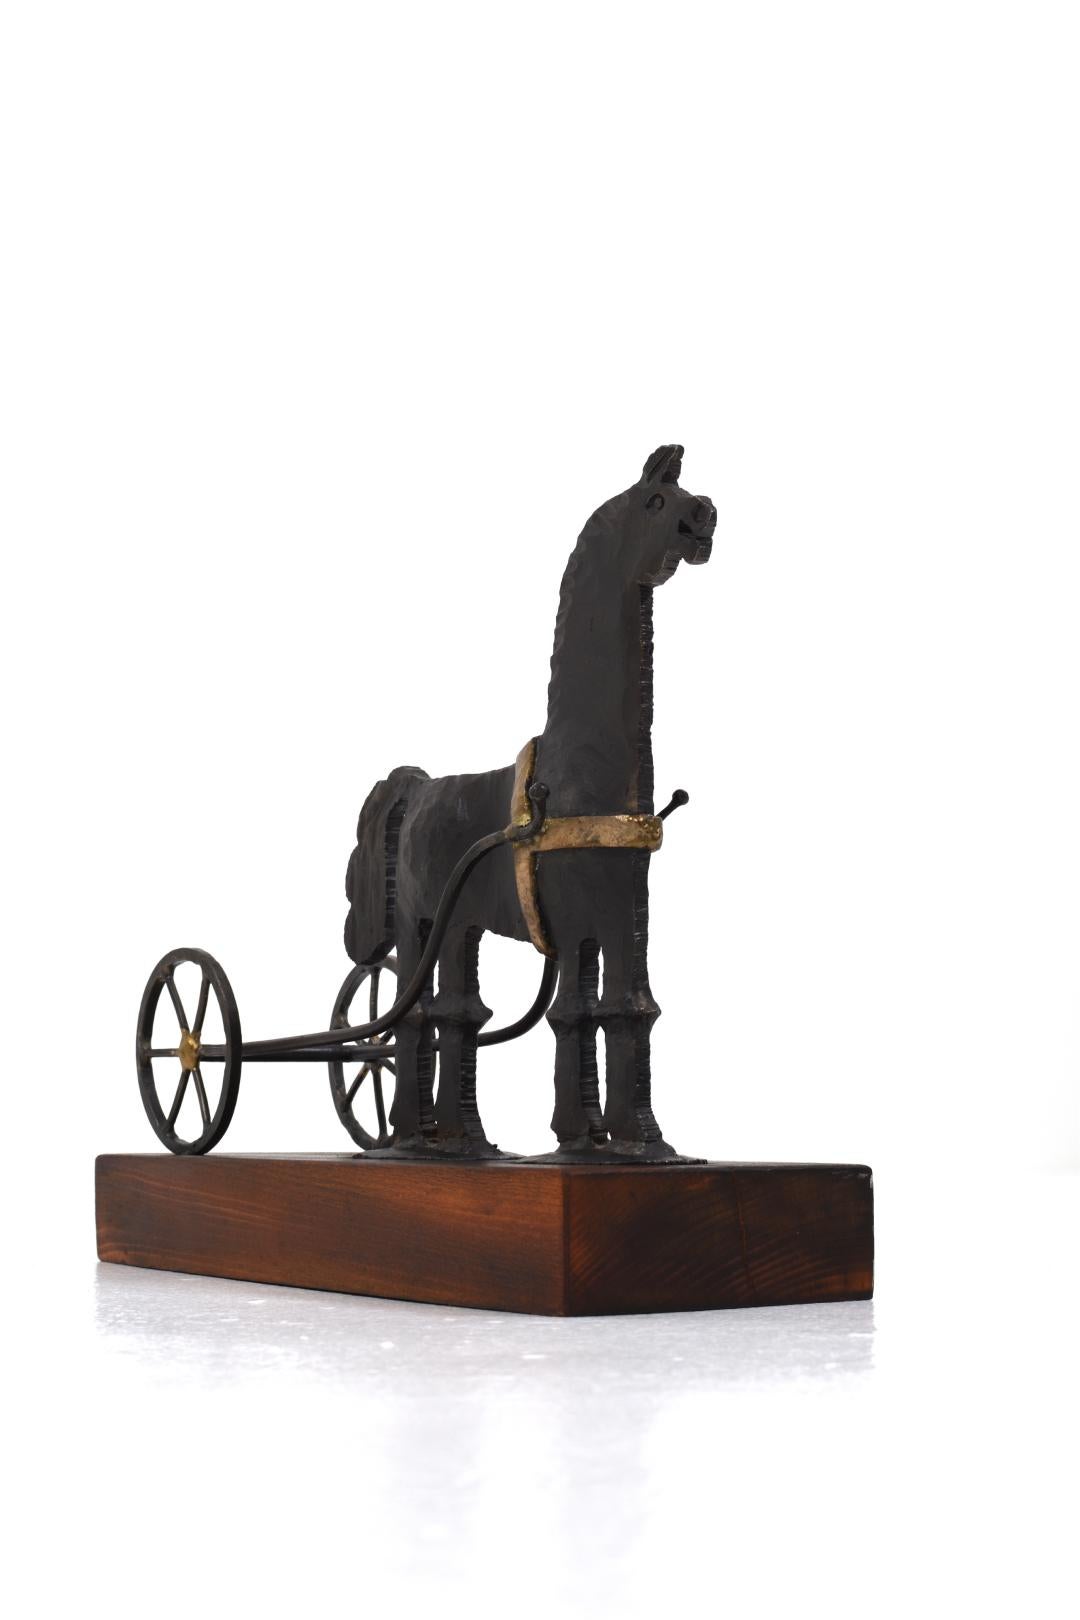 Bertil Vallien et Horst Graf, sculpture, fer forgé en forme de cheval avec une charrette pour Boda Forge.

Bertil Vallien est un artiste verrier suédois né en 1938 à Sollentuna. Il est connu pour ses objets sculpturaux en verre et ses sculptures qui